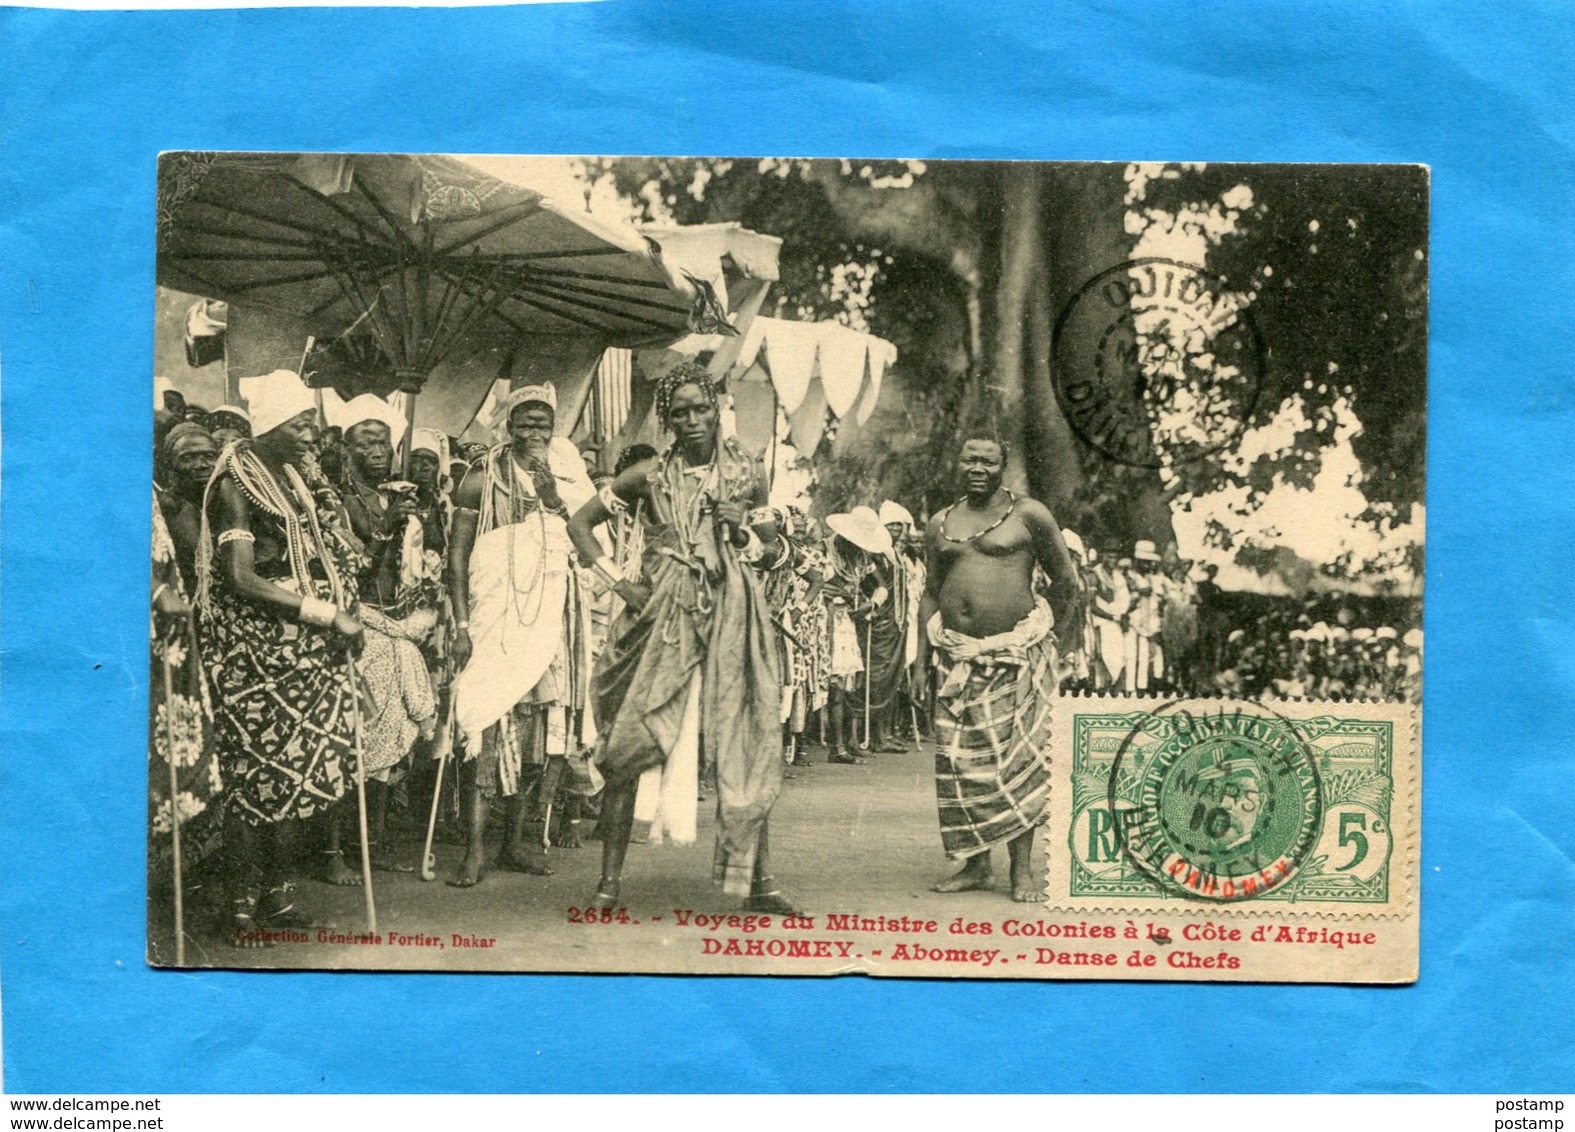 Dahomey-voyage Ministre Des Colonis-gros Plan Danse De Chefs- Tp 5c N°21+cachet Ouidah 4 Mars 1910-édit Fortier - Dahomey